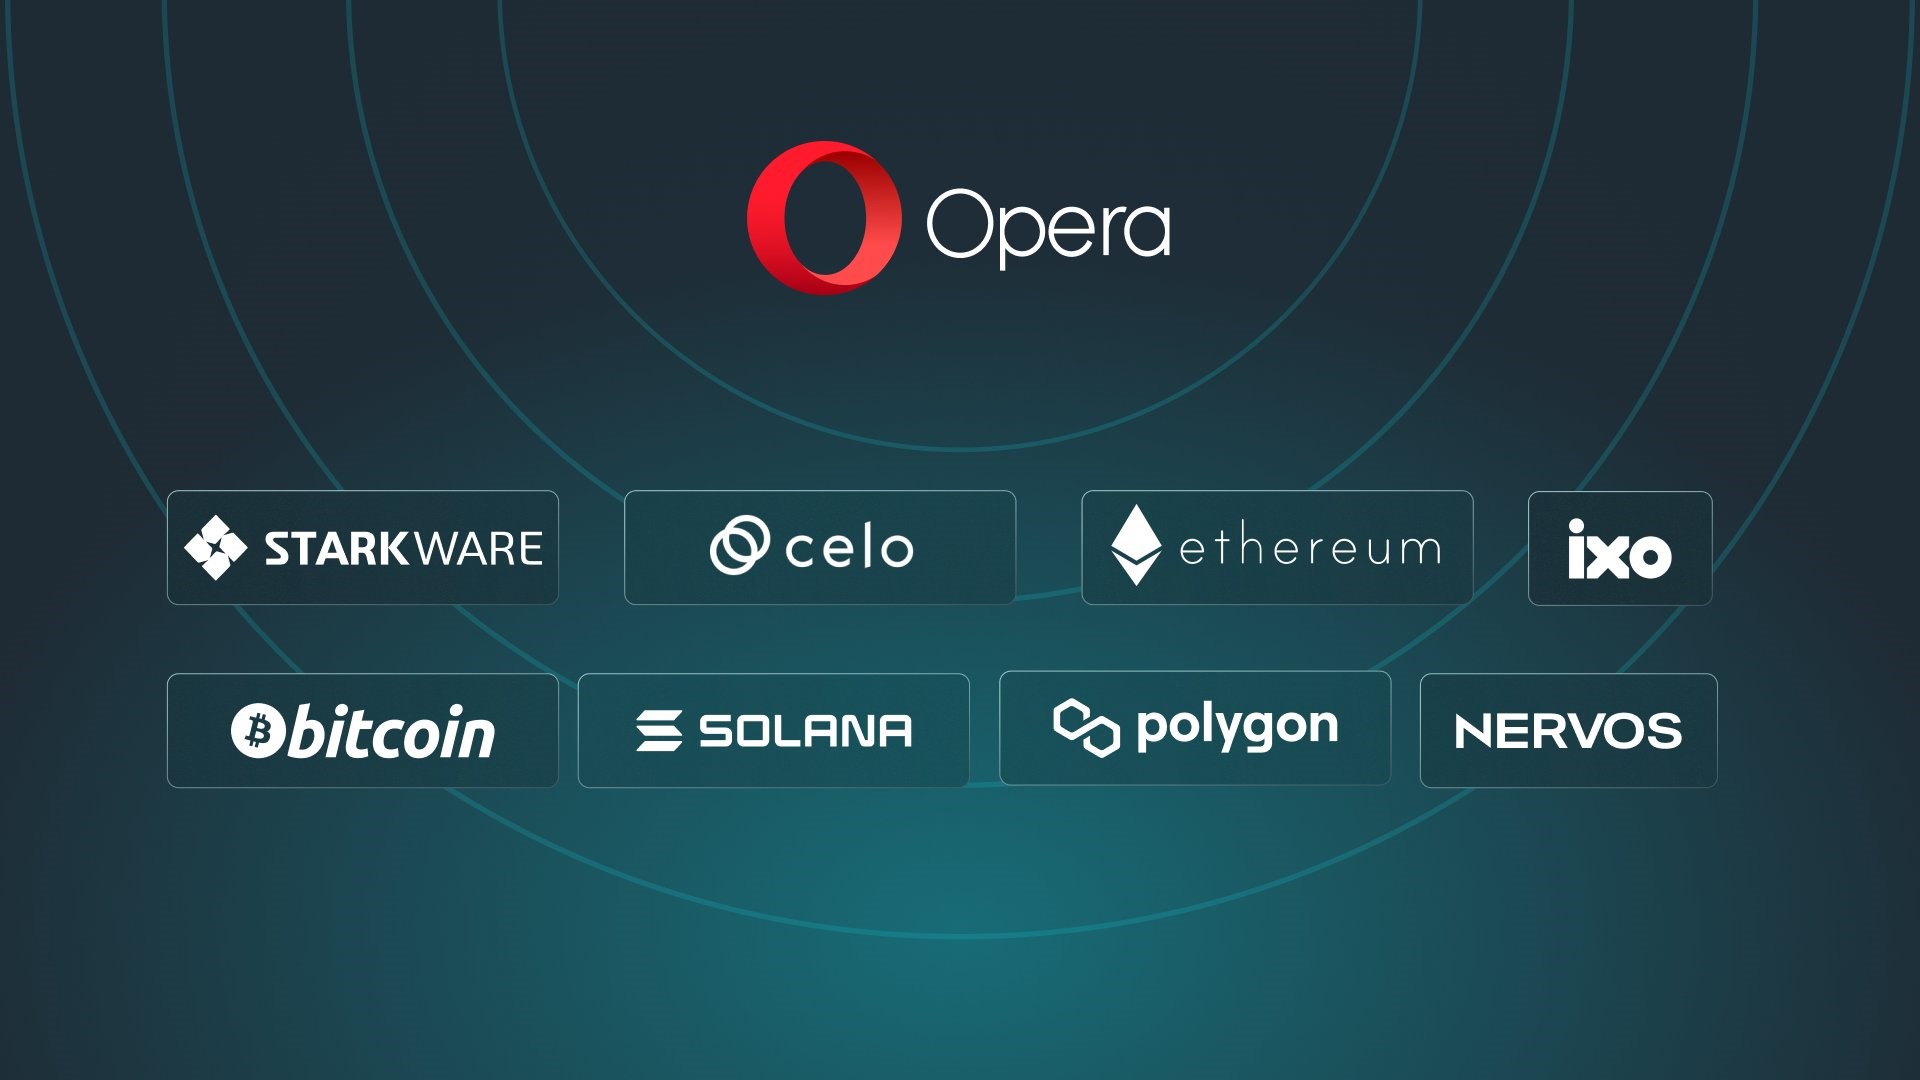 Opera’dan 8 Blockchain Ağına Destek